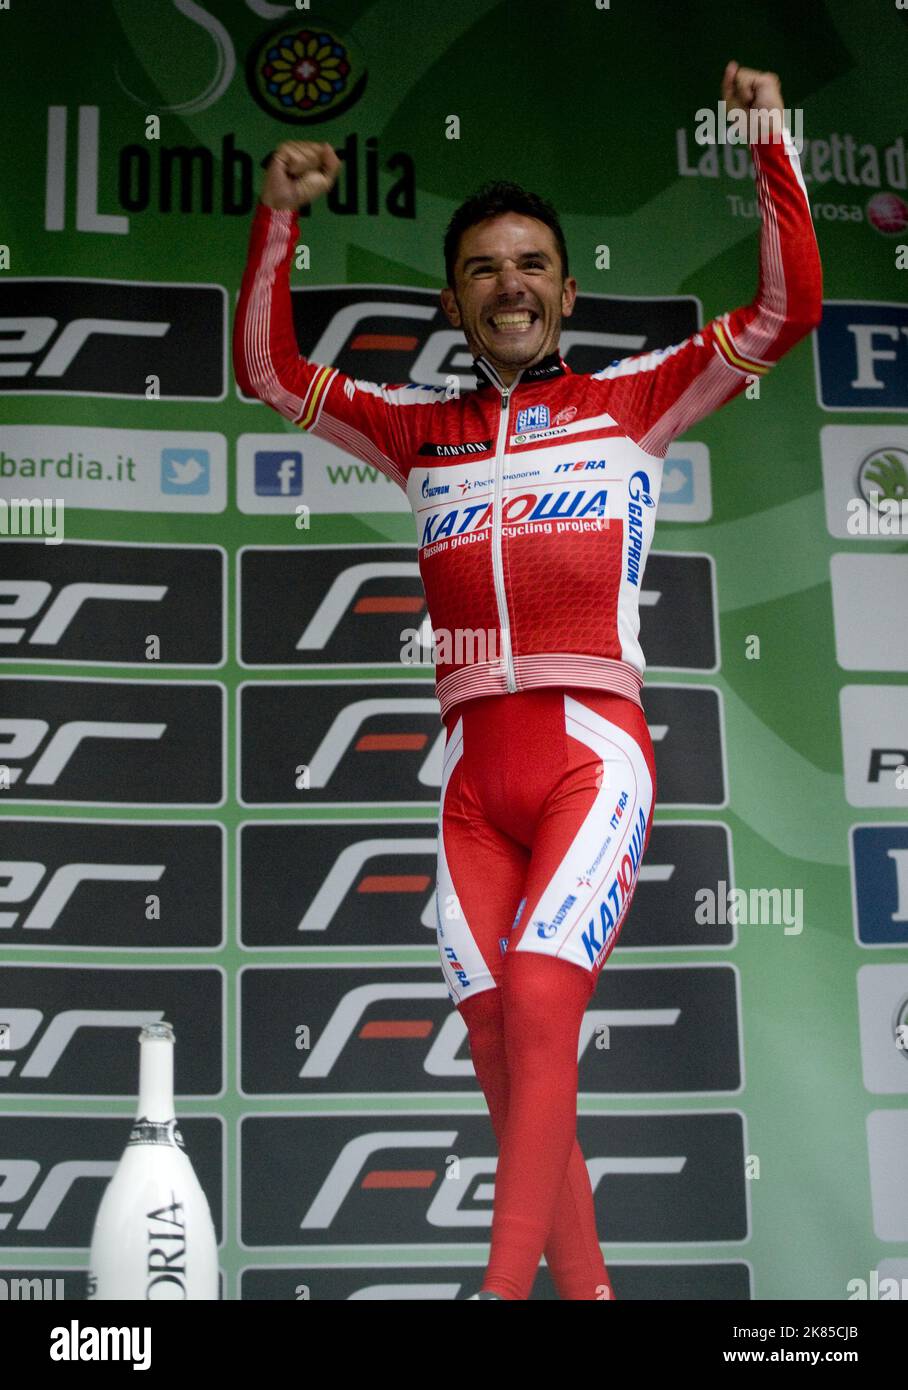 Joaquin Rodriguez de l'équipe Katusha remporte le Tour de Lombardie de 2012 et remporte son trophée et célèbre sur le podium. Banque D'Images